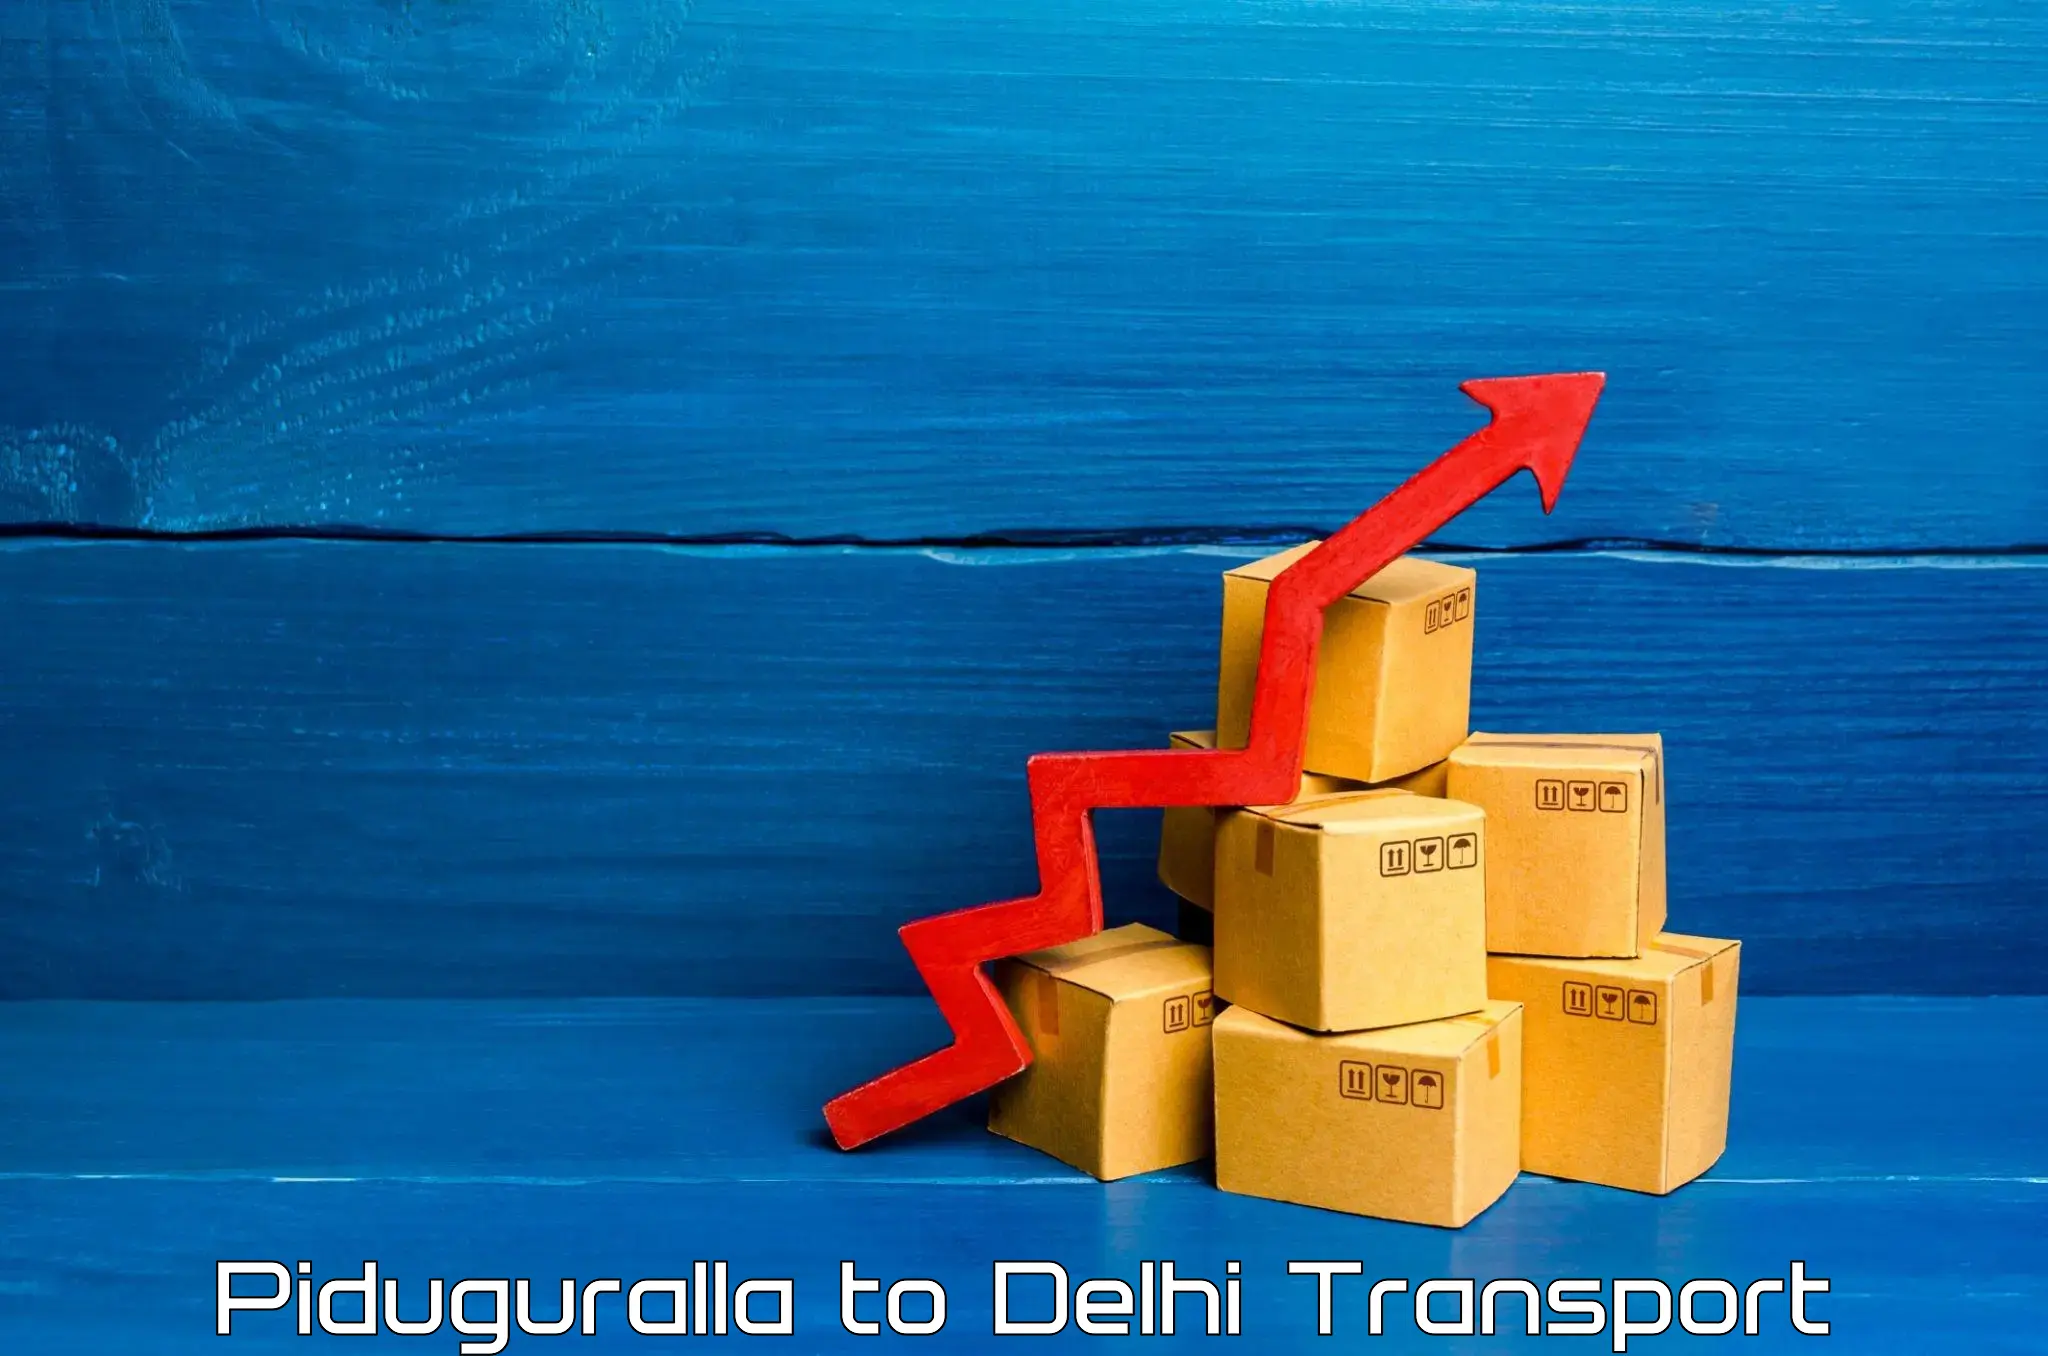 Goods delivery service Piduguralla to Delhi